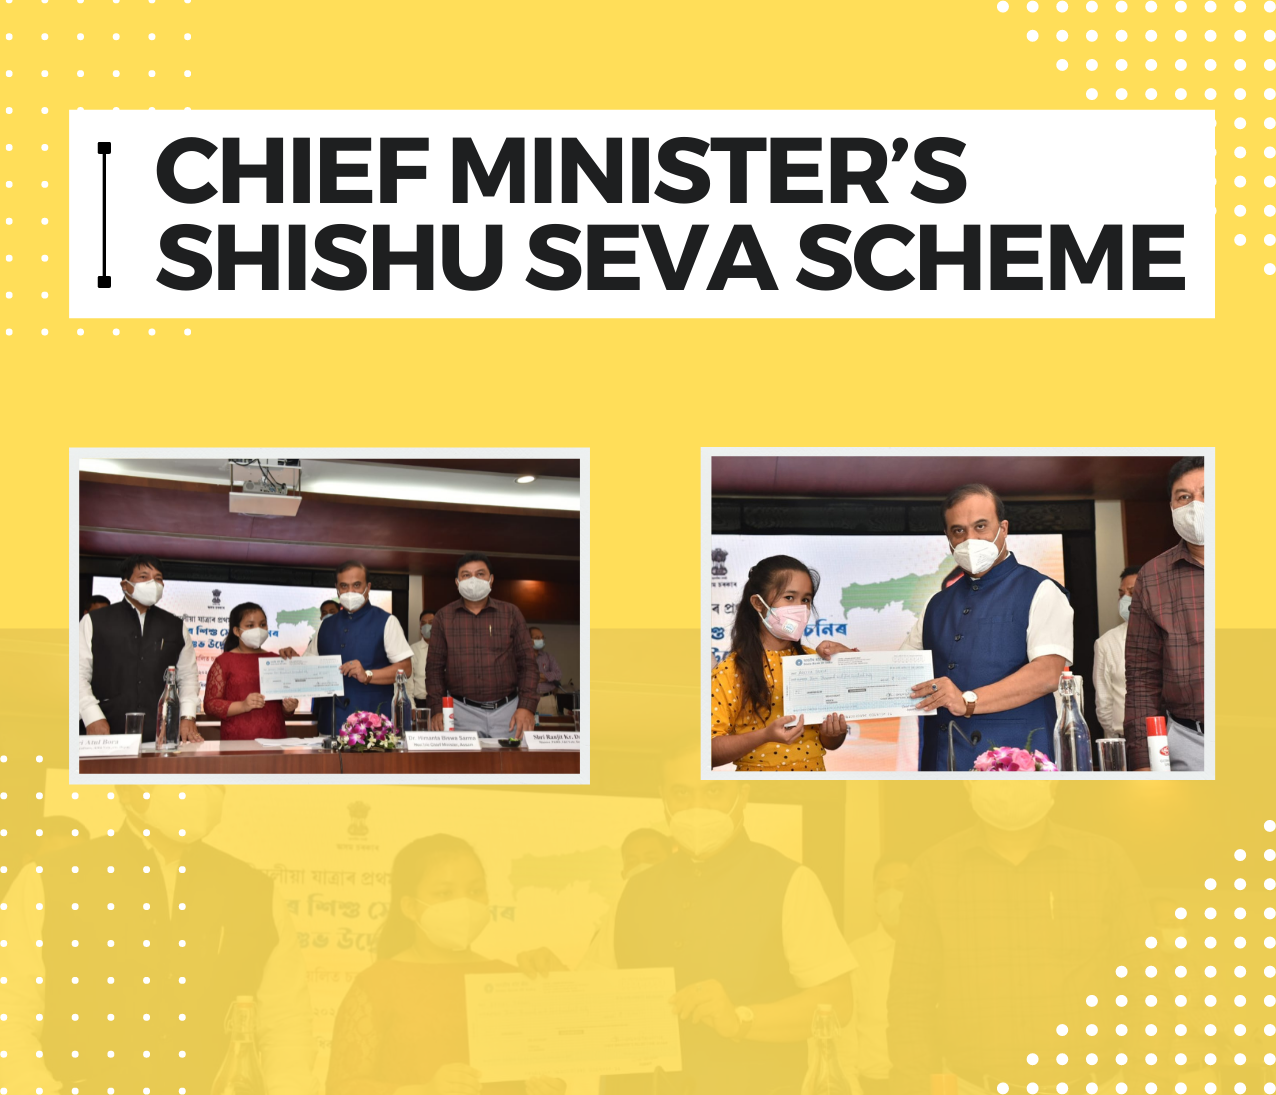 Chief Minister’s Shishu Seva Scheme